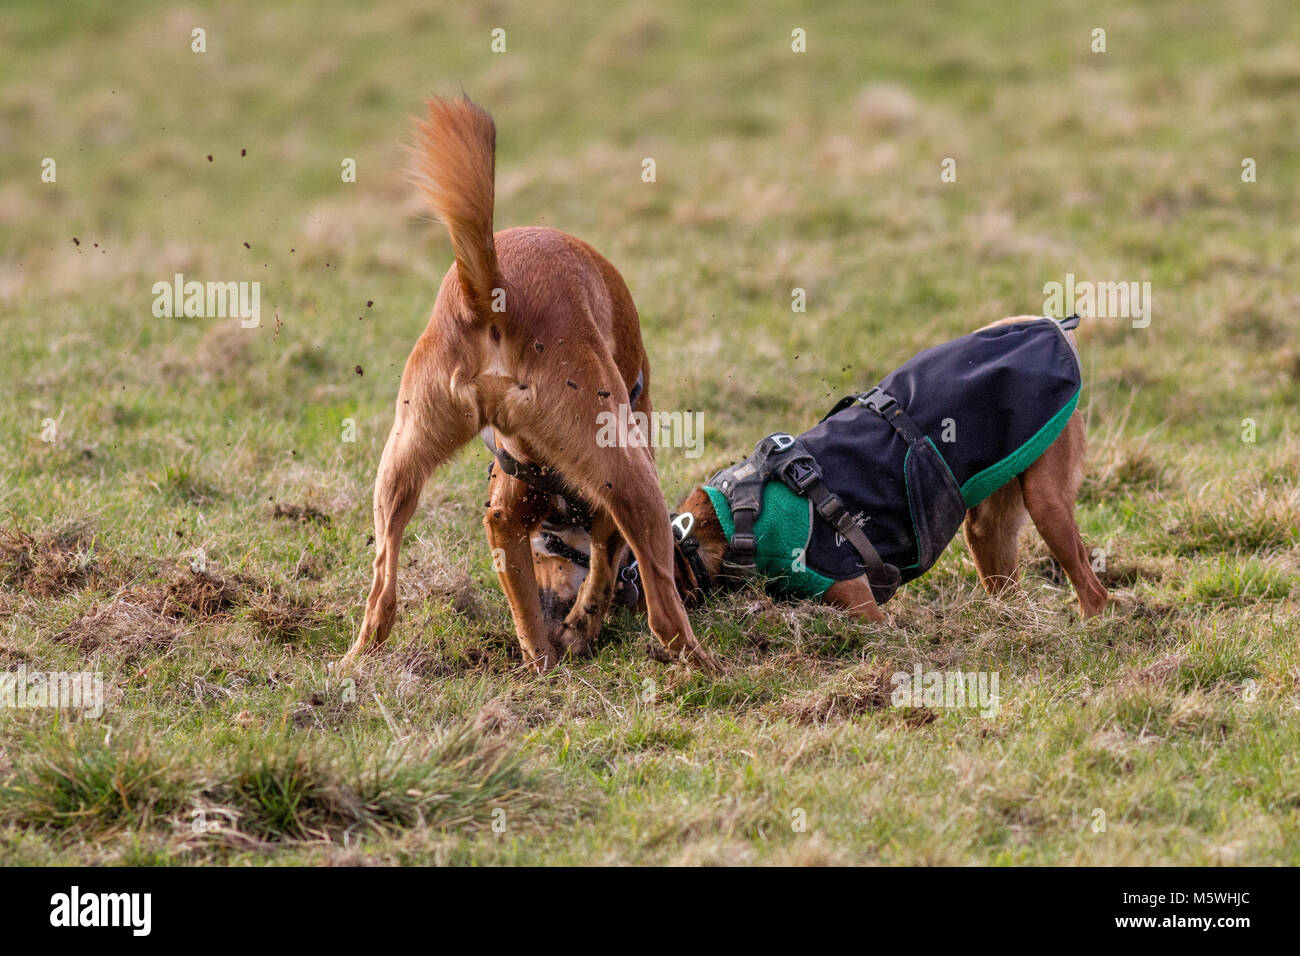 Deux chiens de creuser dans l'herbe, de s'amuser ensemble Banque D'Images